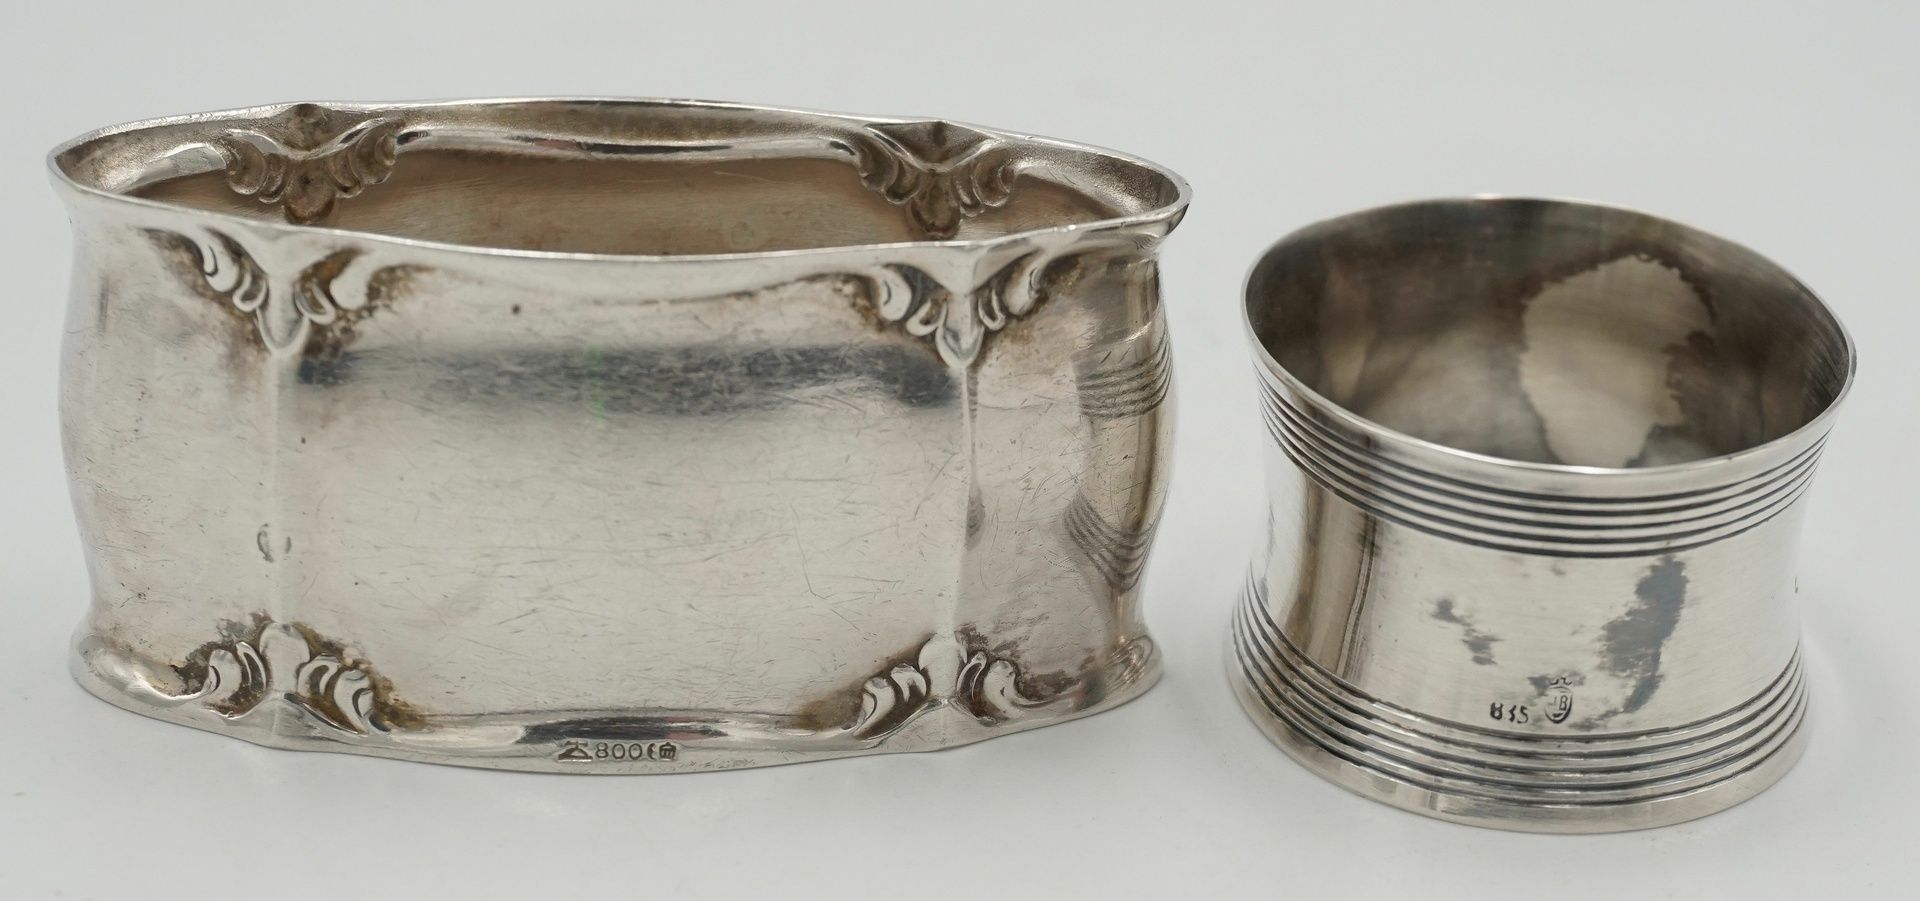 WMF Schälchen mit Glaseinsatz und zwei Serviettenringe aus Silber - Bild 4 aus 4